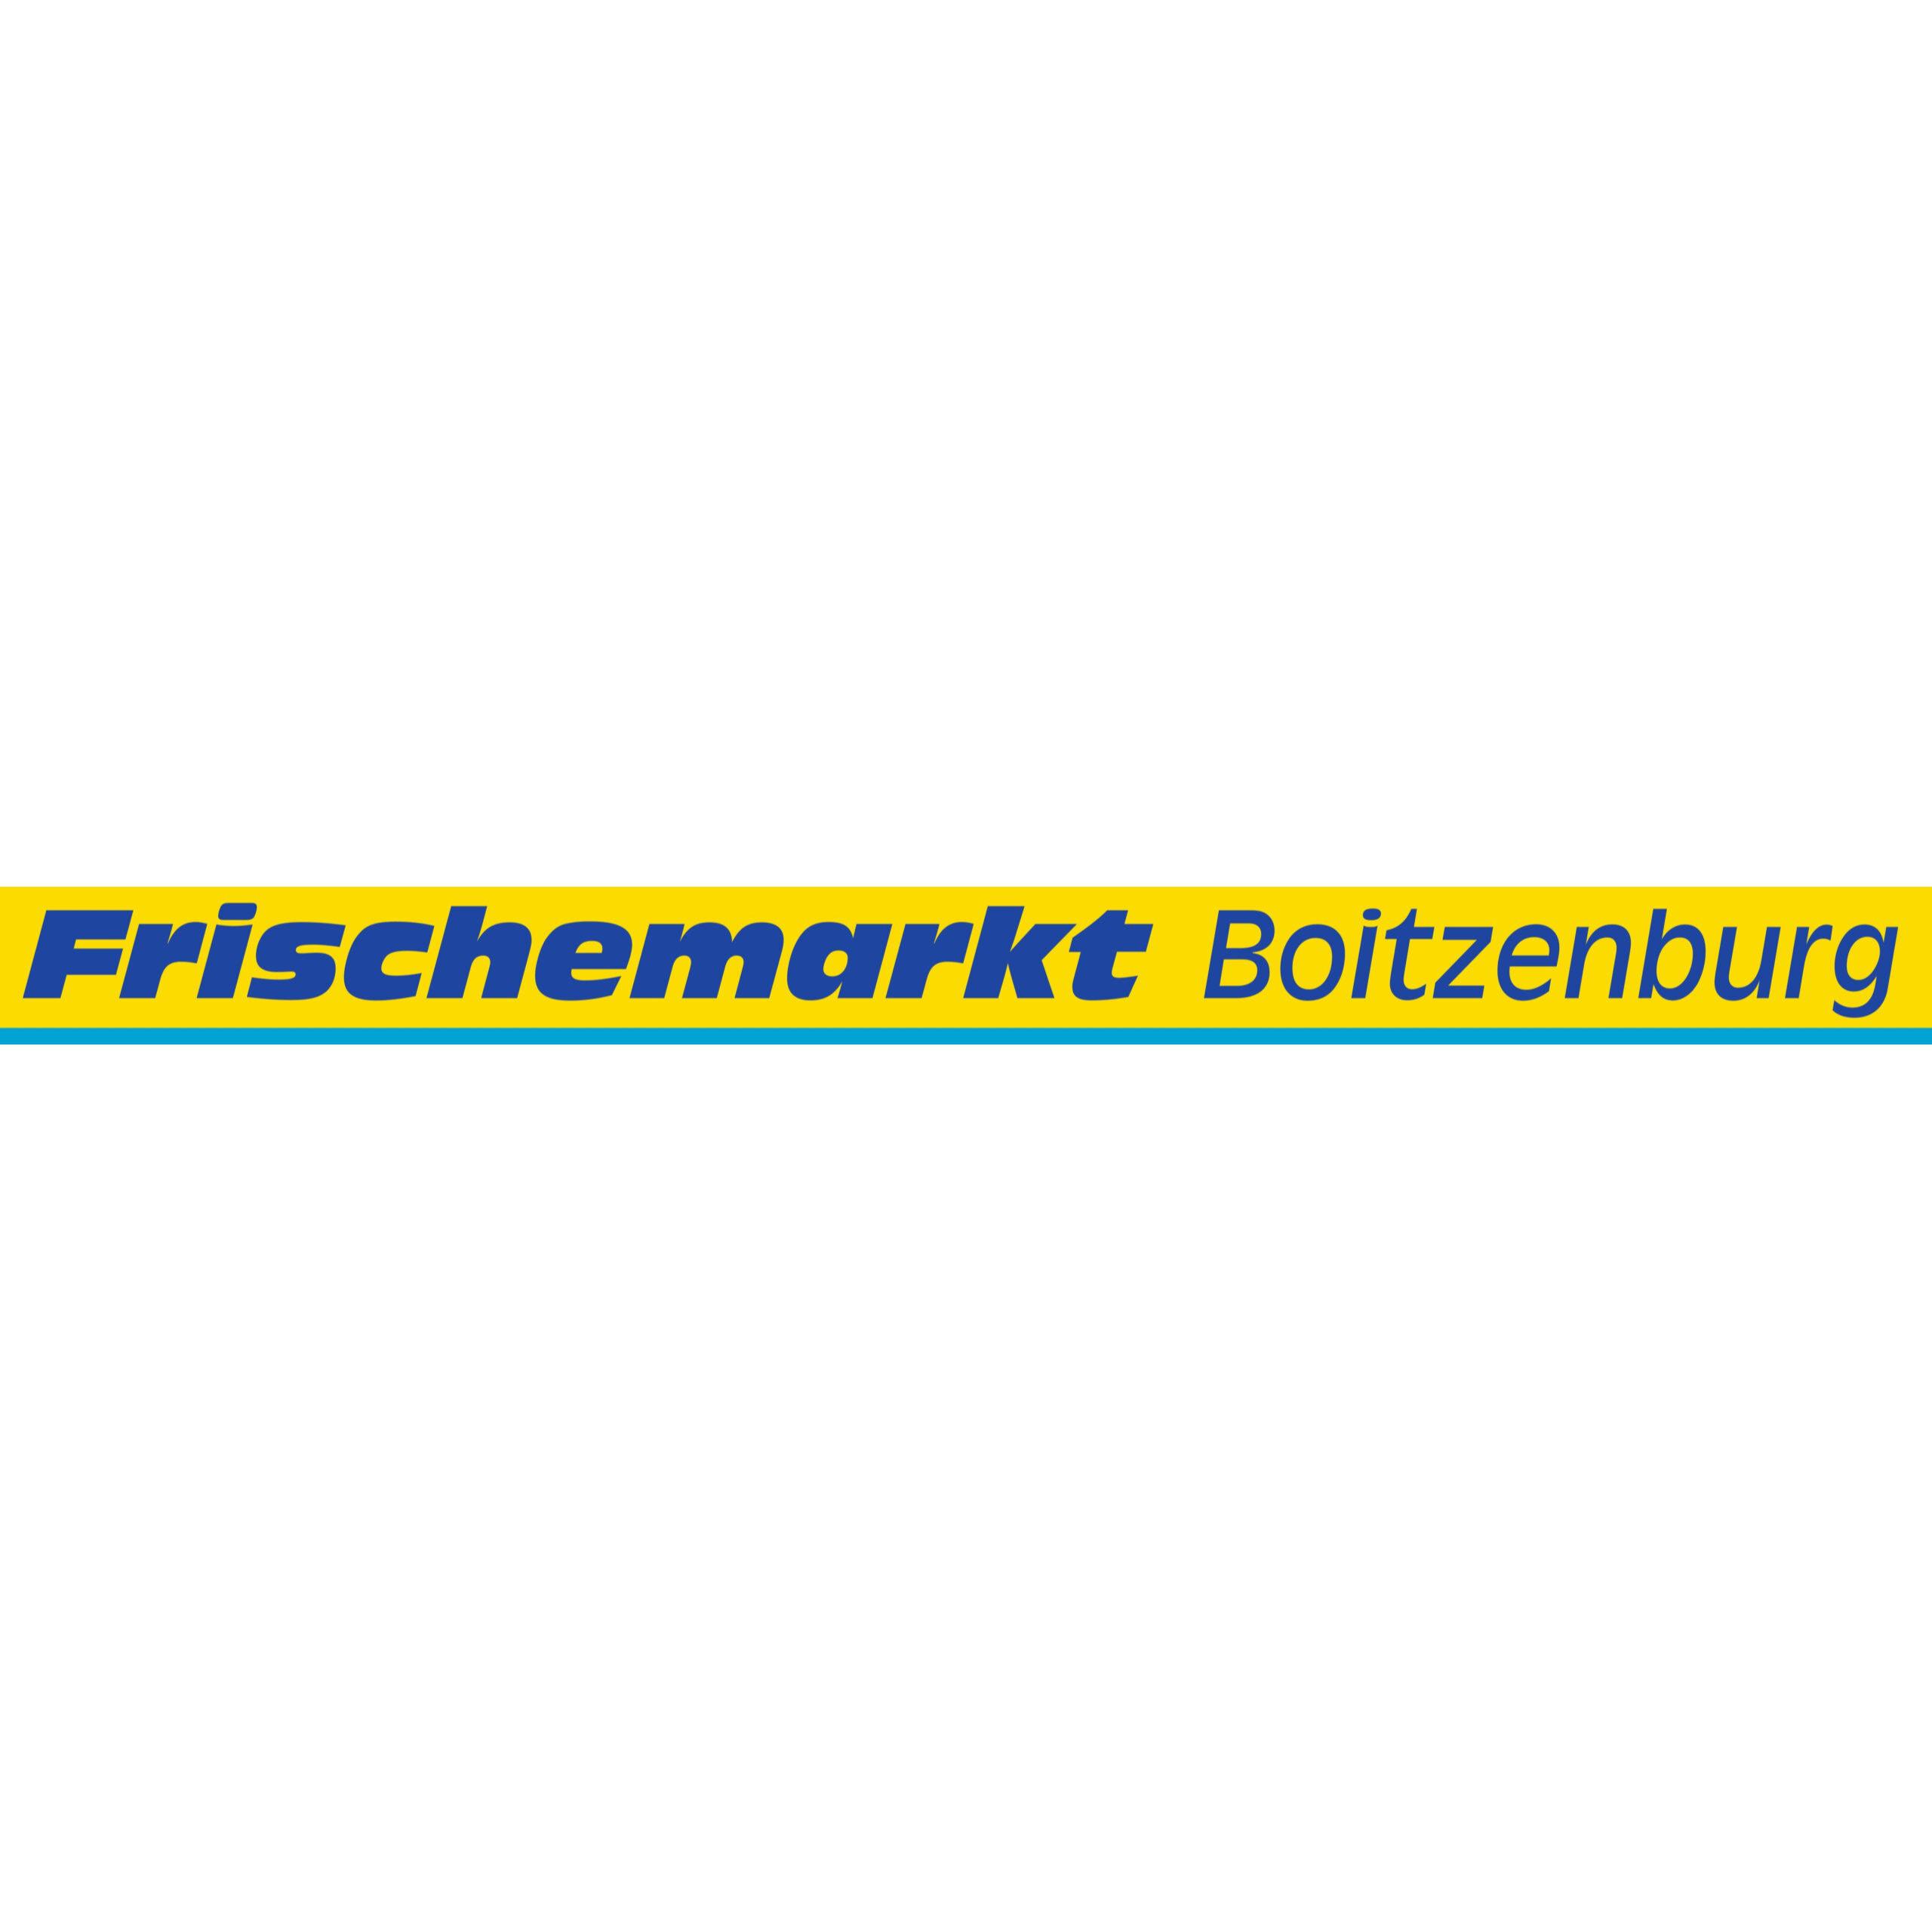 Frischemarkt-Boitzenburg im Boitzenburger Land Logo